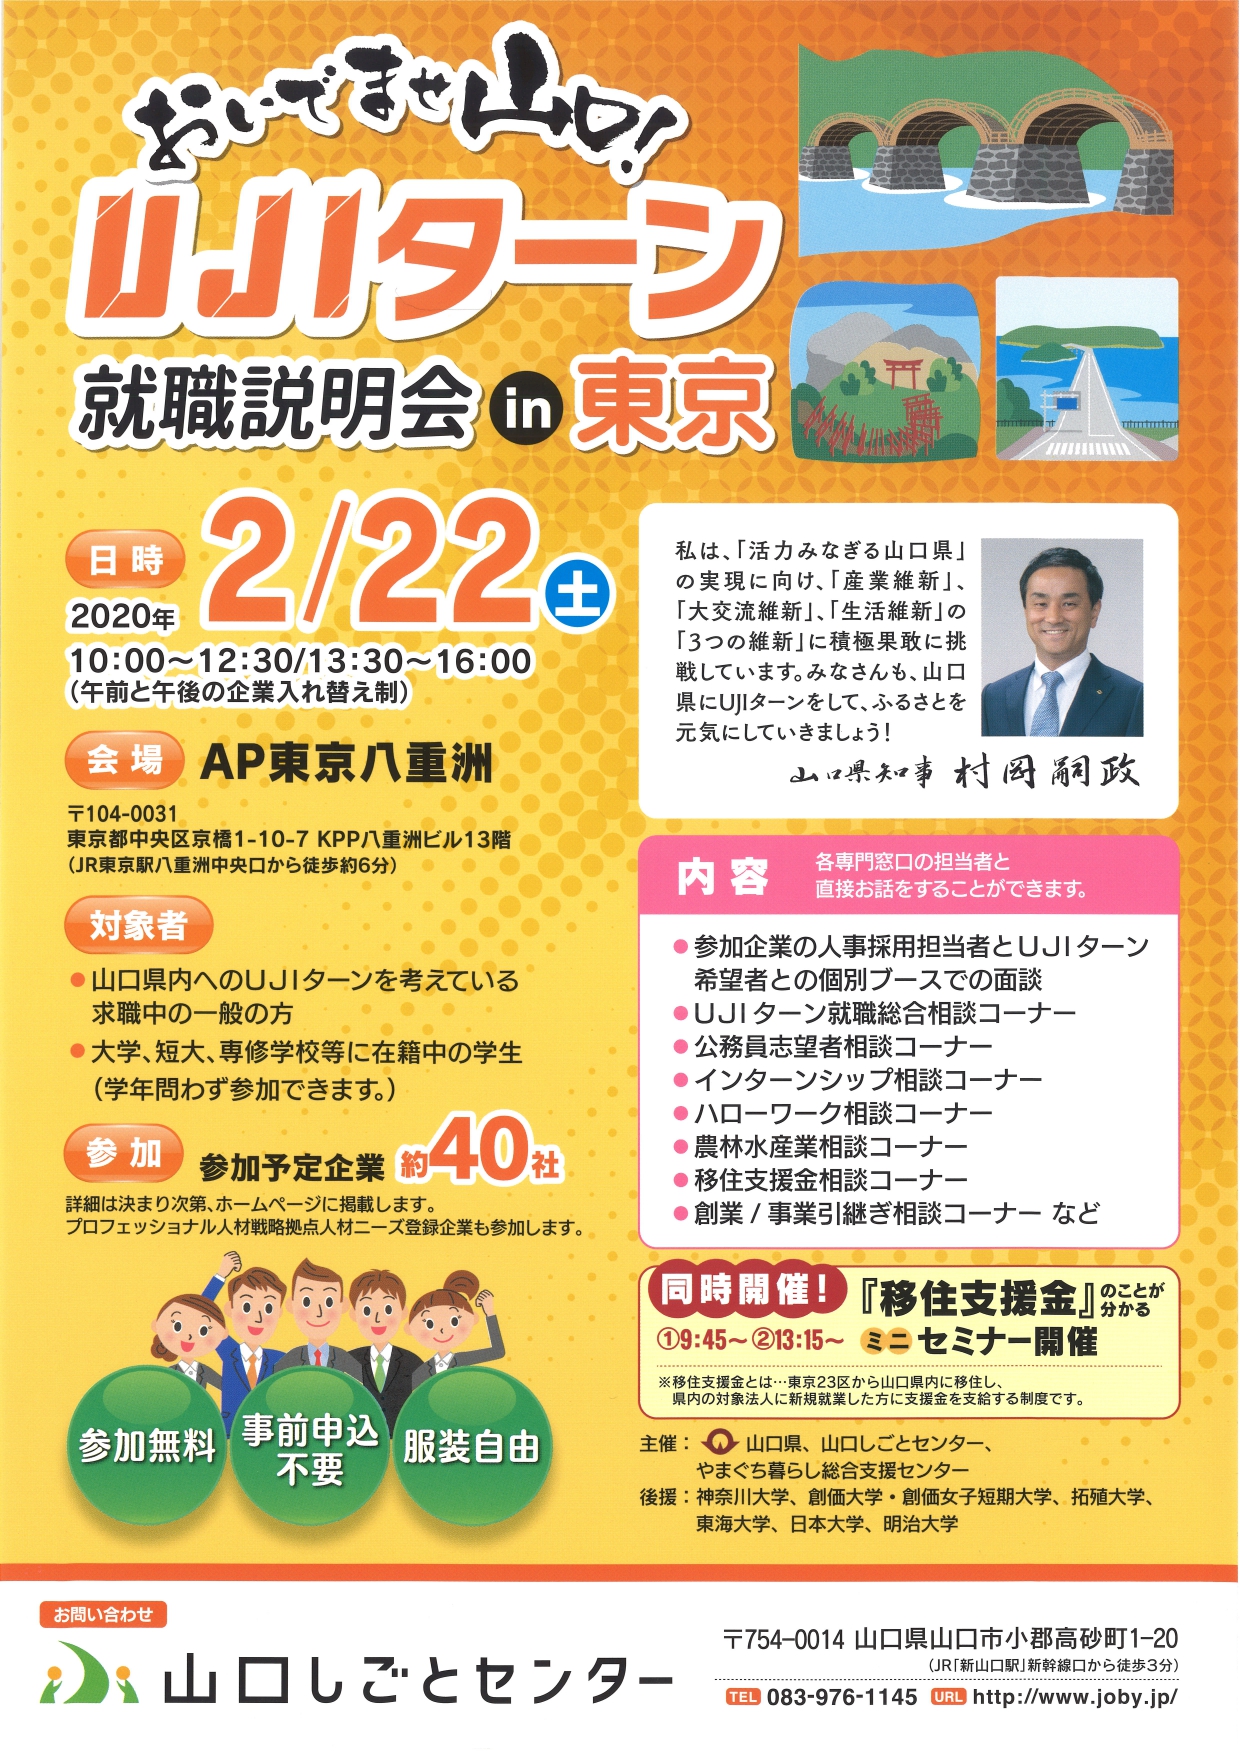 2月22日（土曜日）　”山口県の仕事”が東京に大集合！『おいでませ山口！UJIターン就職説明会in東京』開催です。 | 地域のトピックス